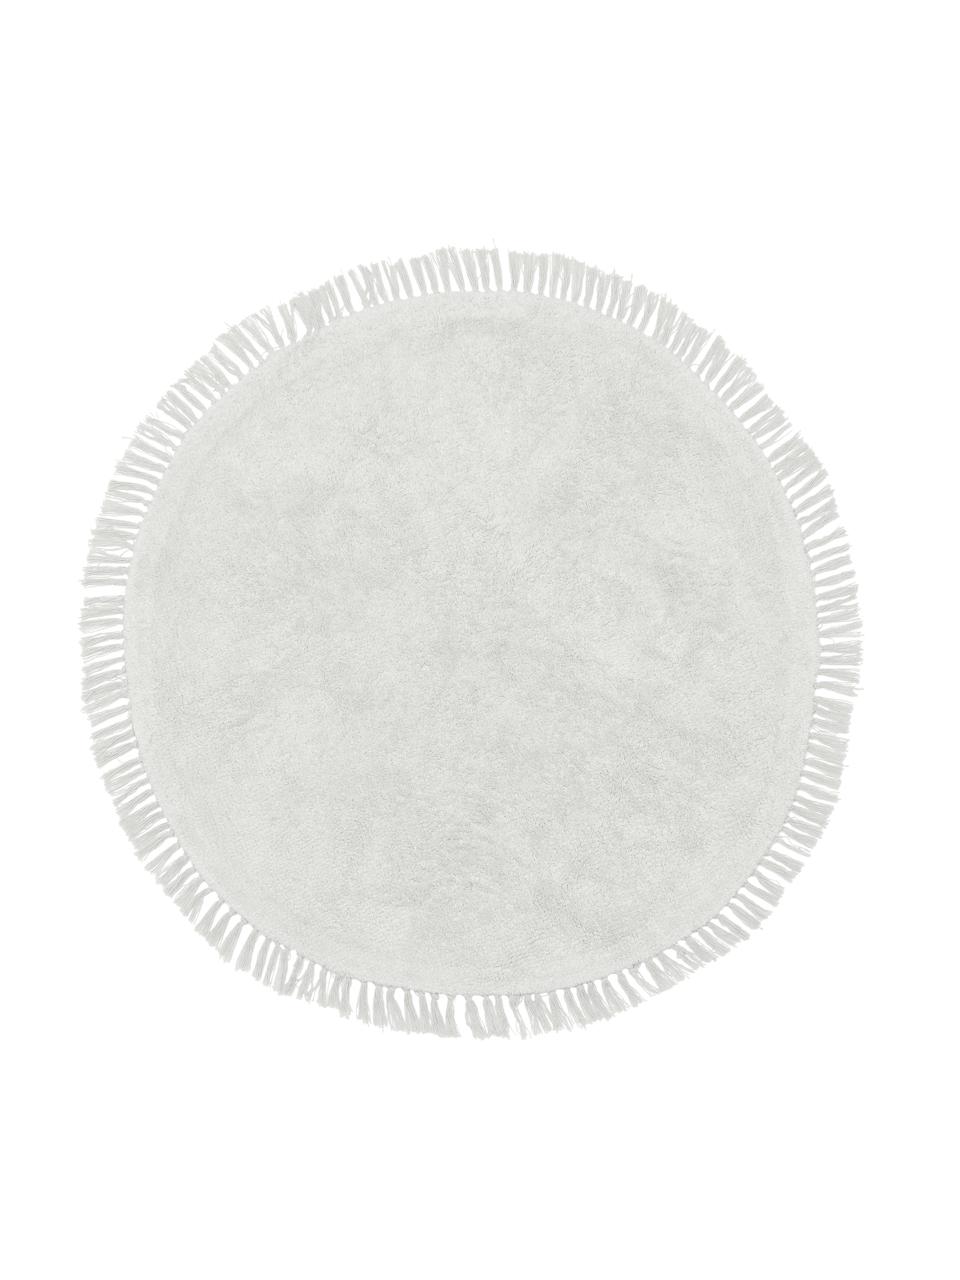 Tapis rond coton beige tufté main Daya, Gris, blanc, Ø 110 cm (taille S)